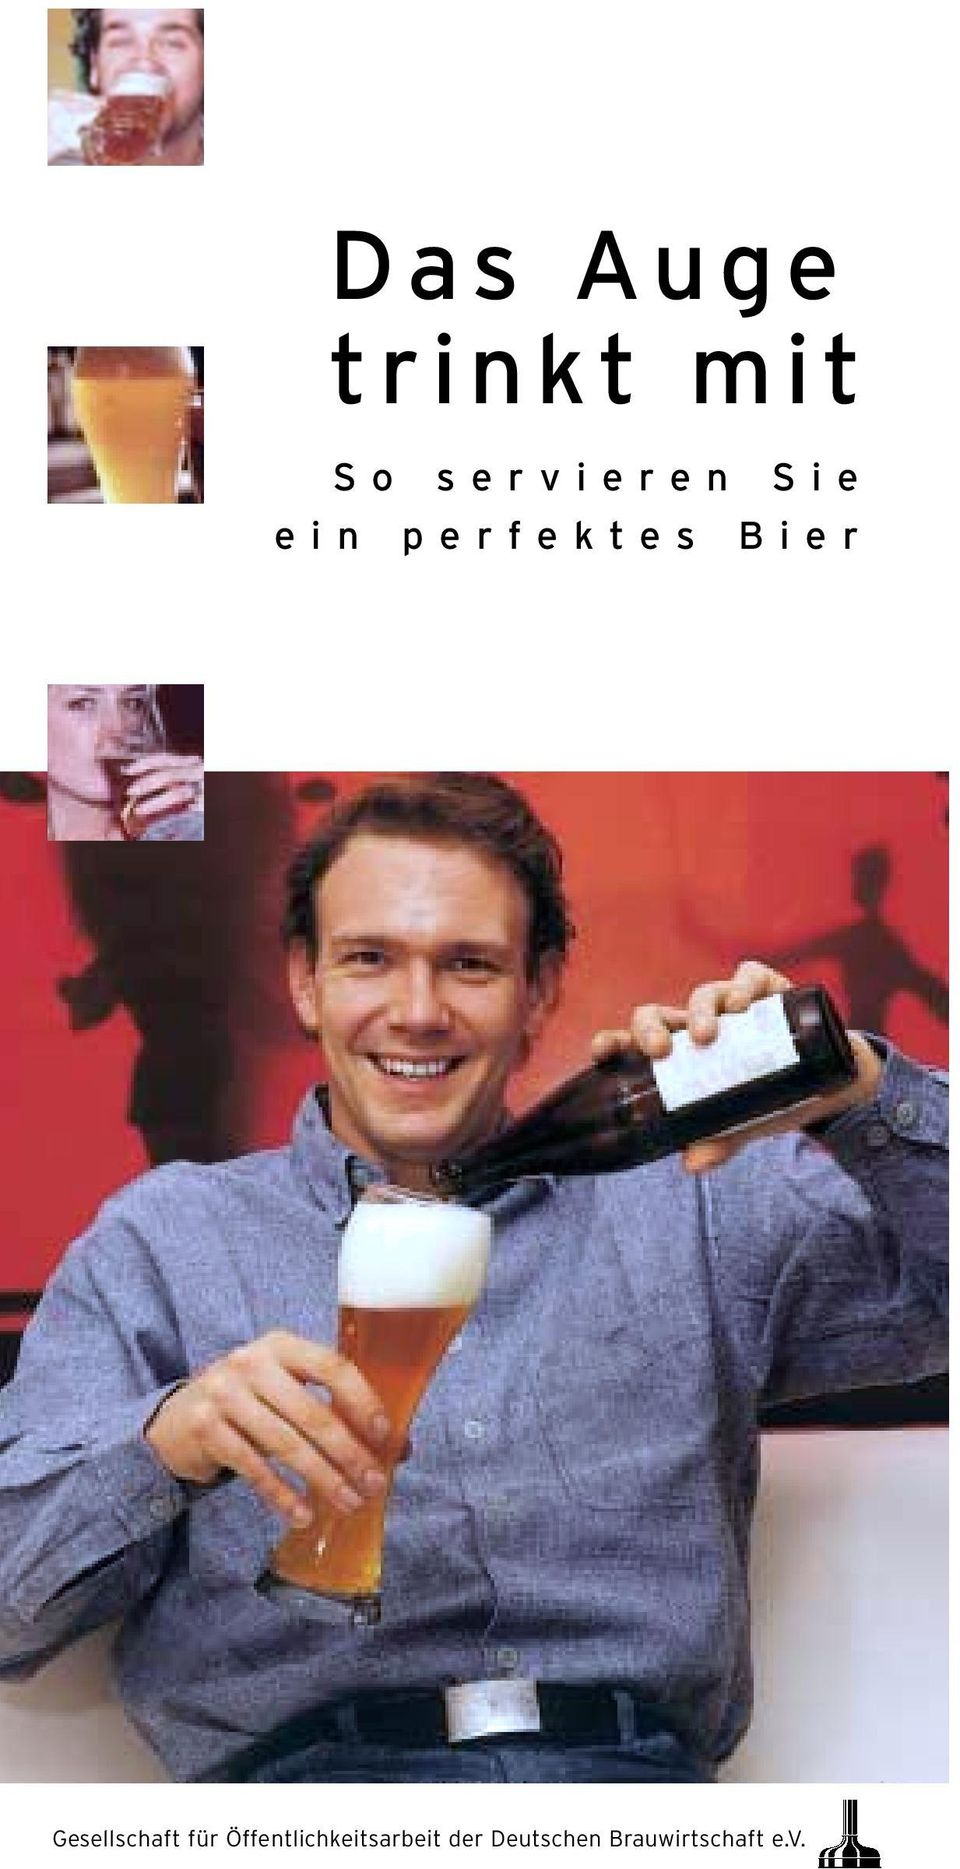 Bier Gesellschaft für